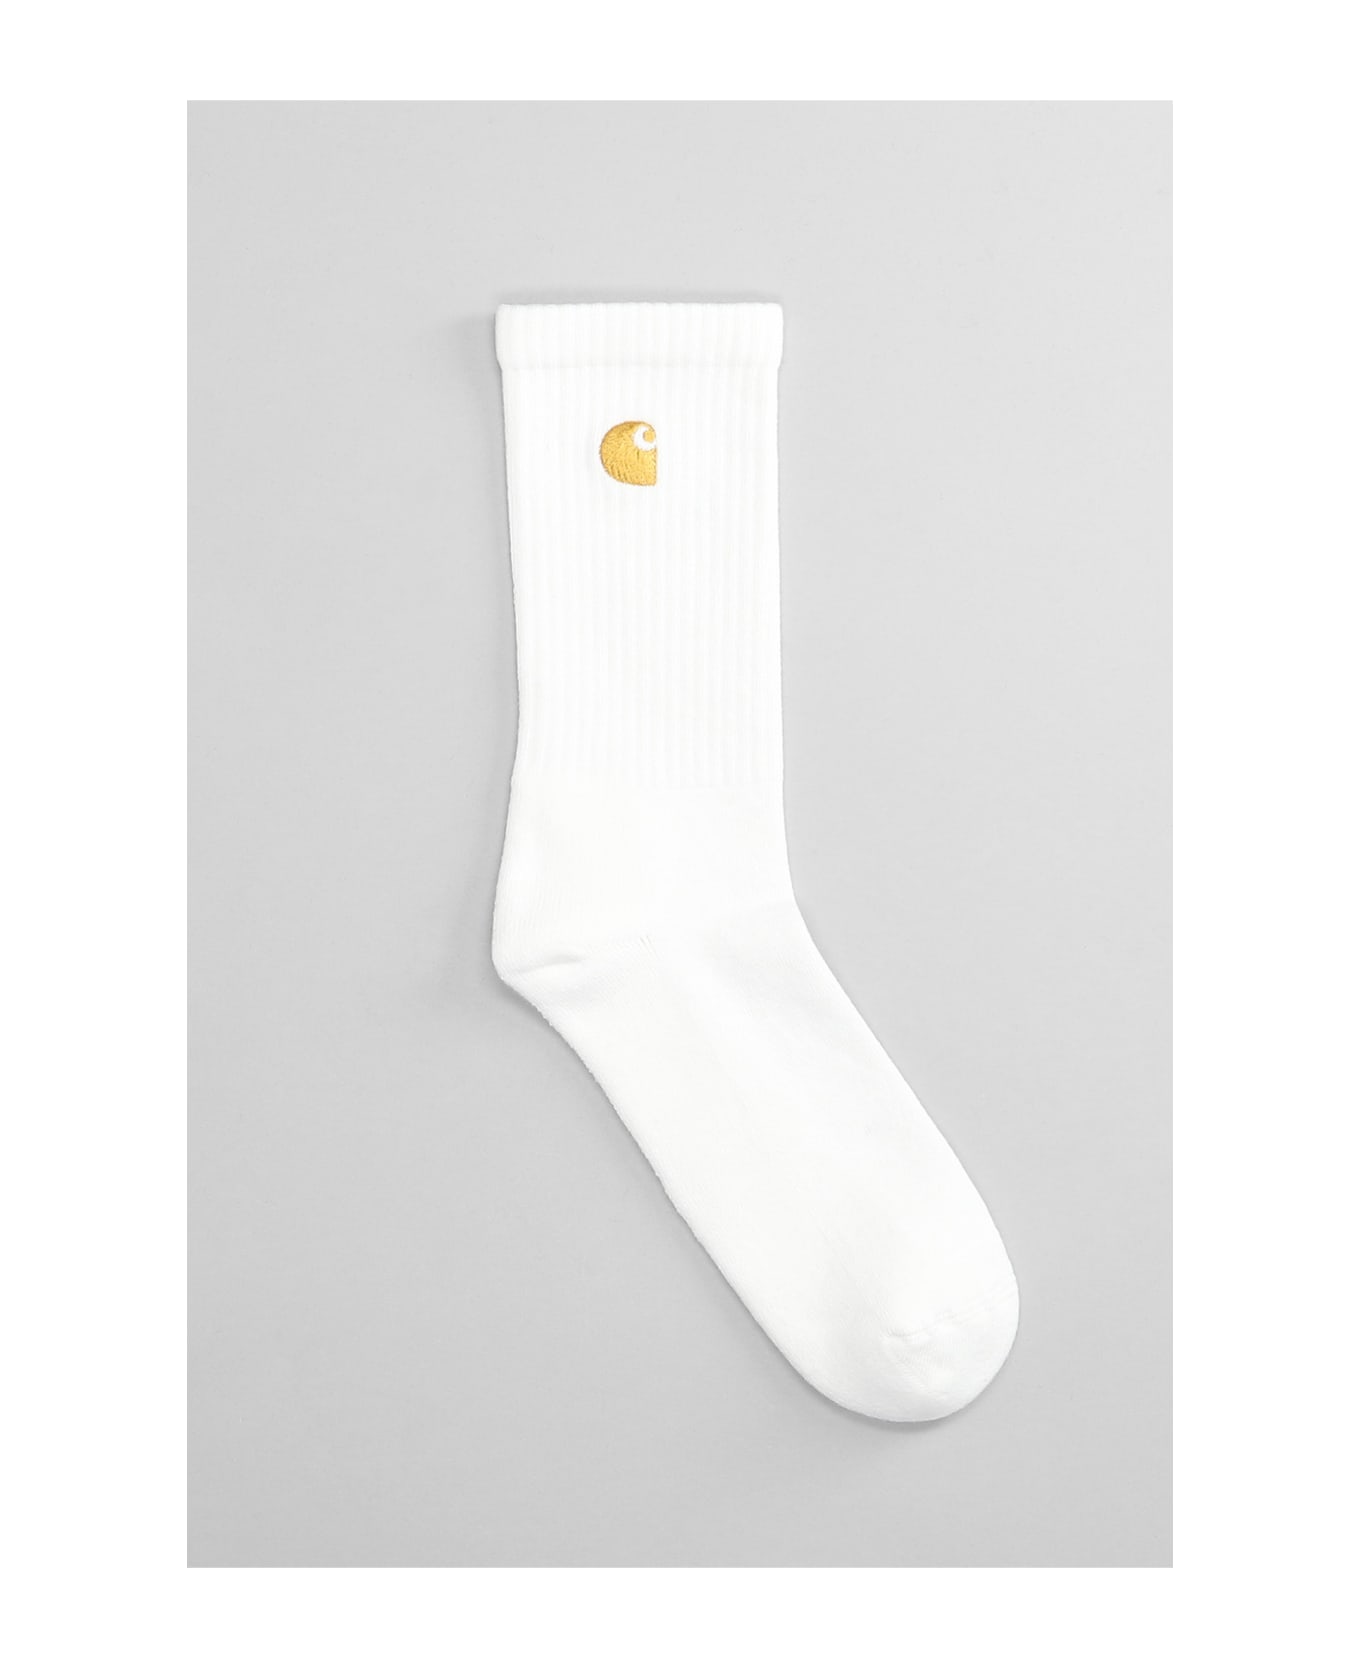 Carhartt Logo Socks - White